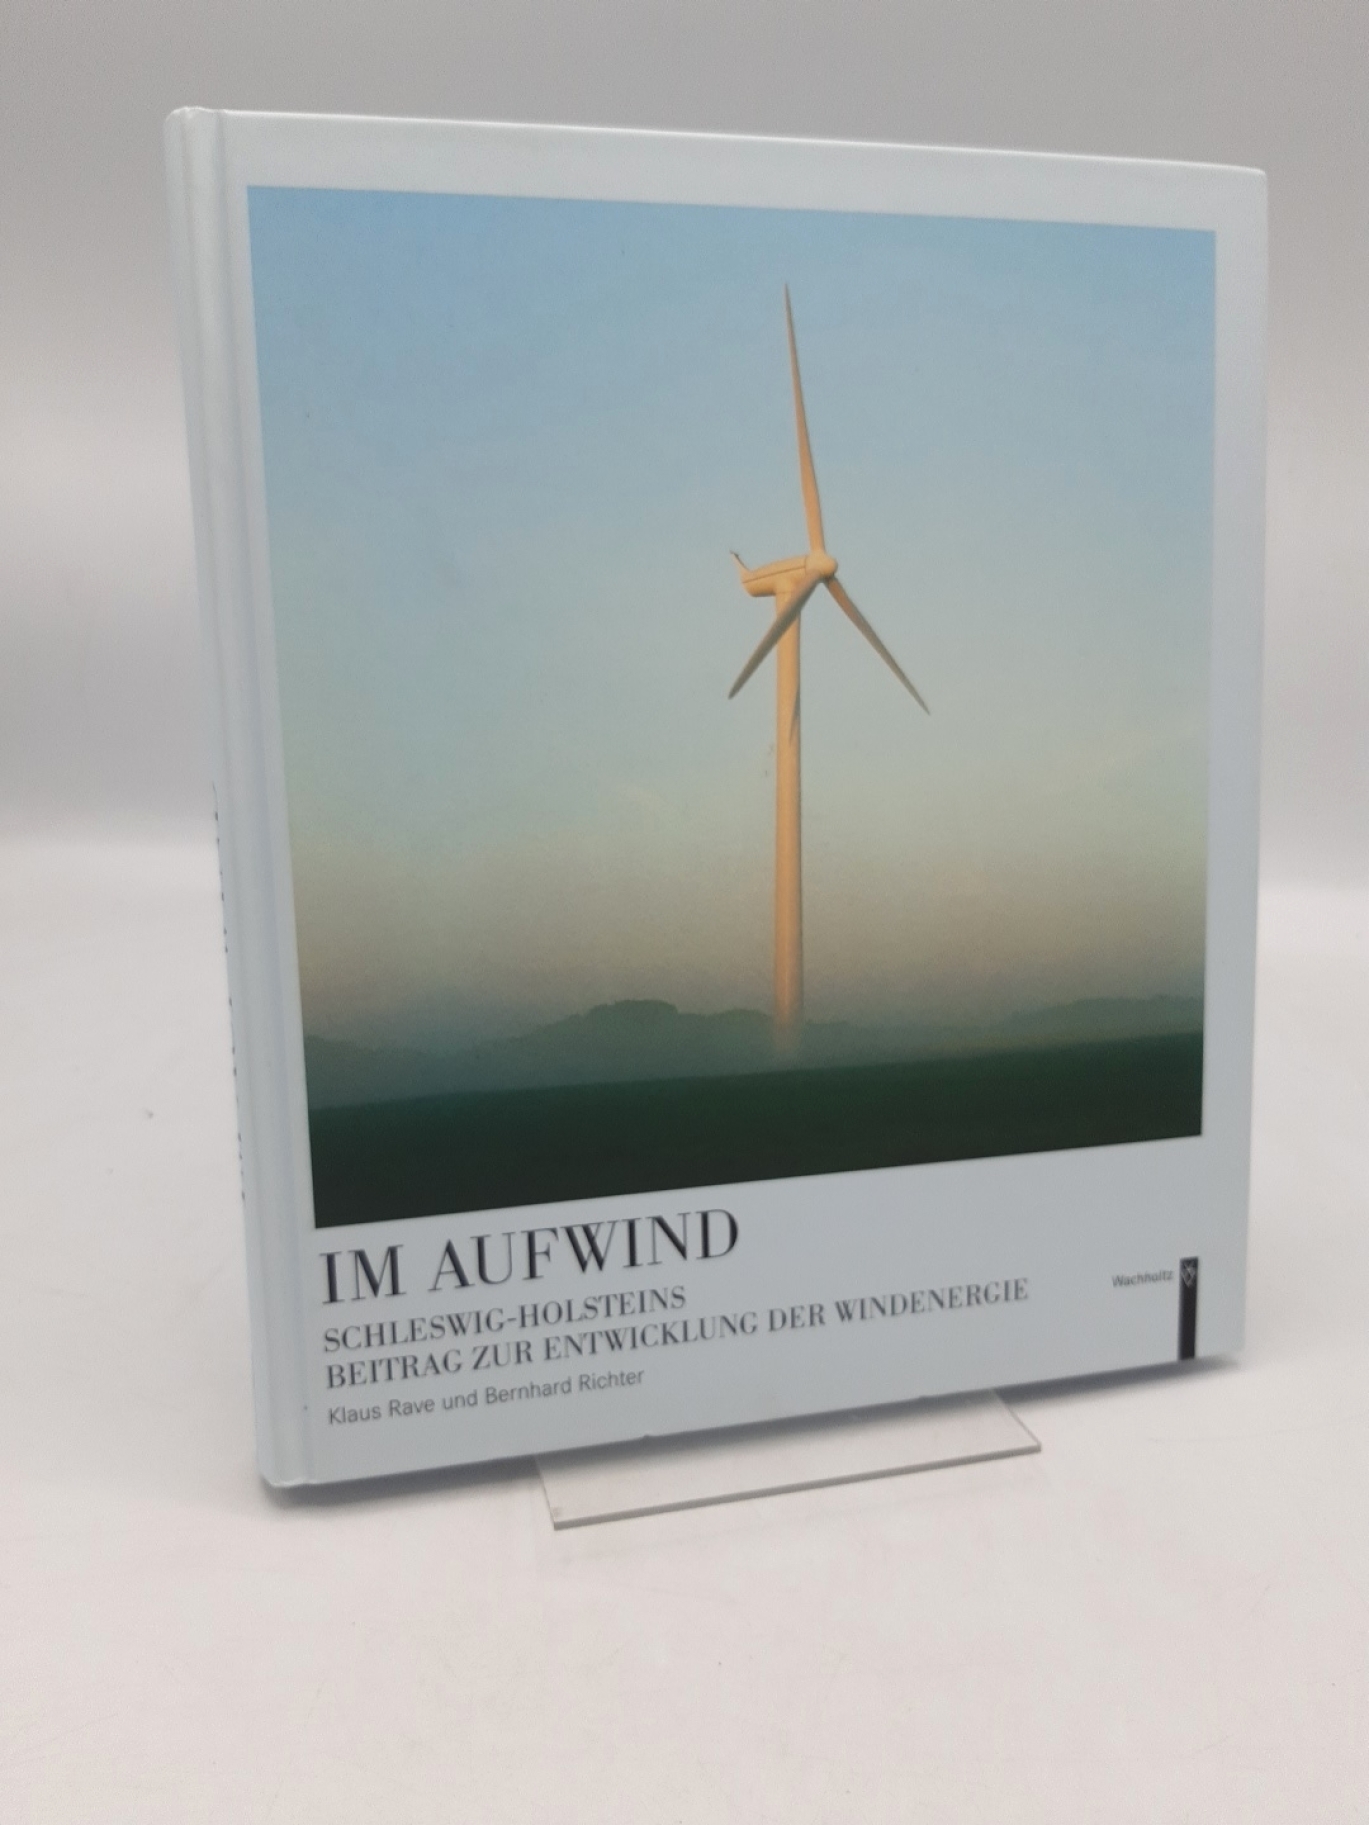 Rave, Klaus: Im Aufwind Schleswig-Holsteins Beitrag zur Entwicklung der Windenergie